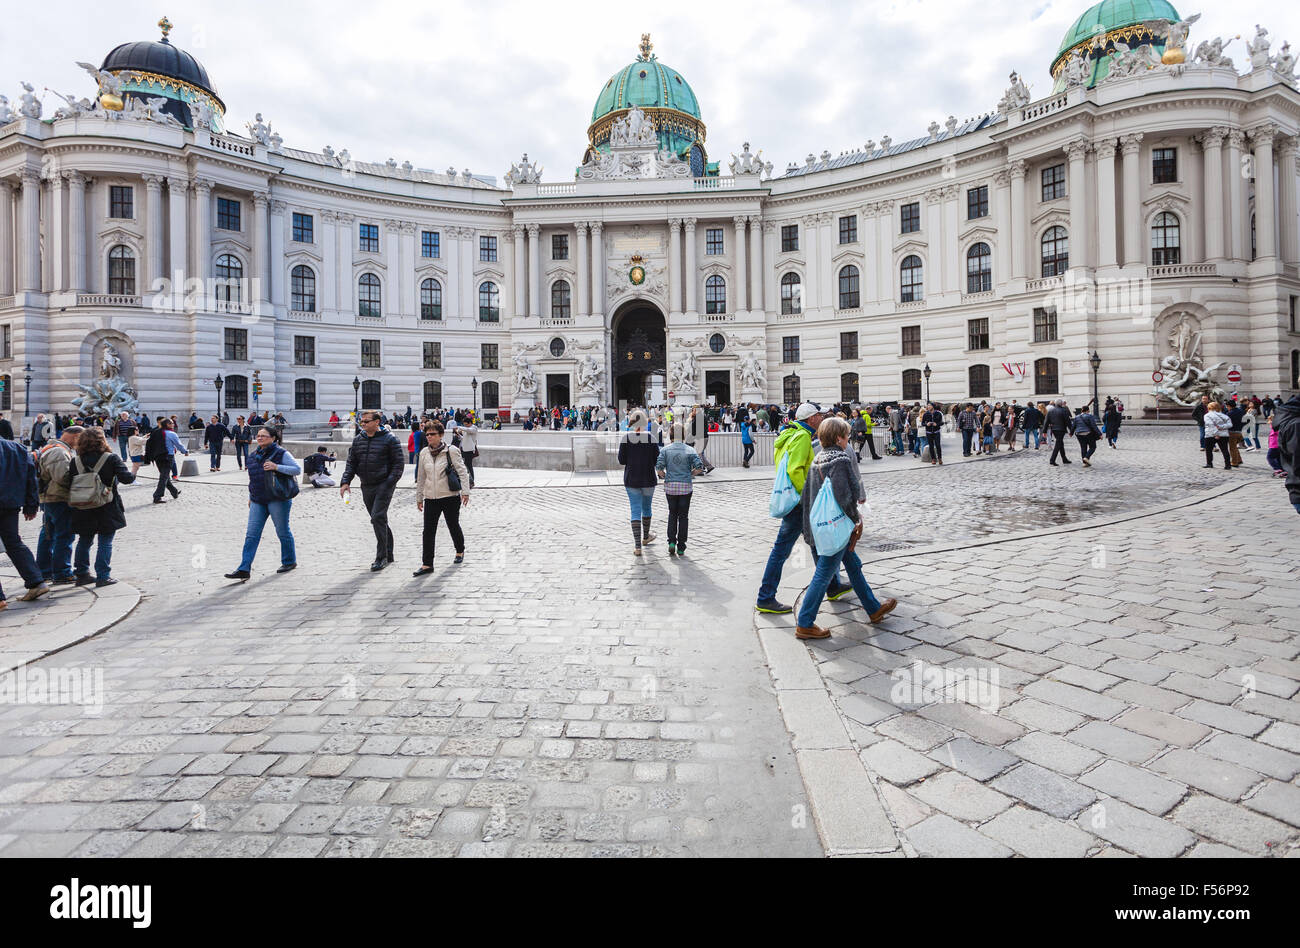 VIENNA, Austria - 27 settembre 2015: turisti sulla piazza Michaelerplatz vicino a San Michele ala Palazzo di Hofburg. È stato Michaelertrakt Foto Stock